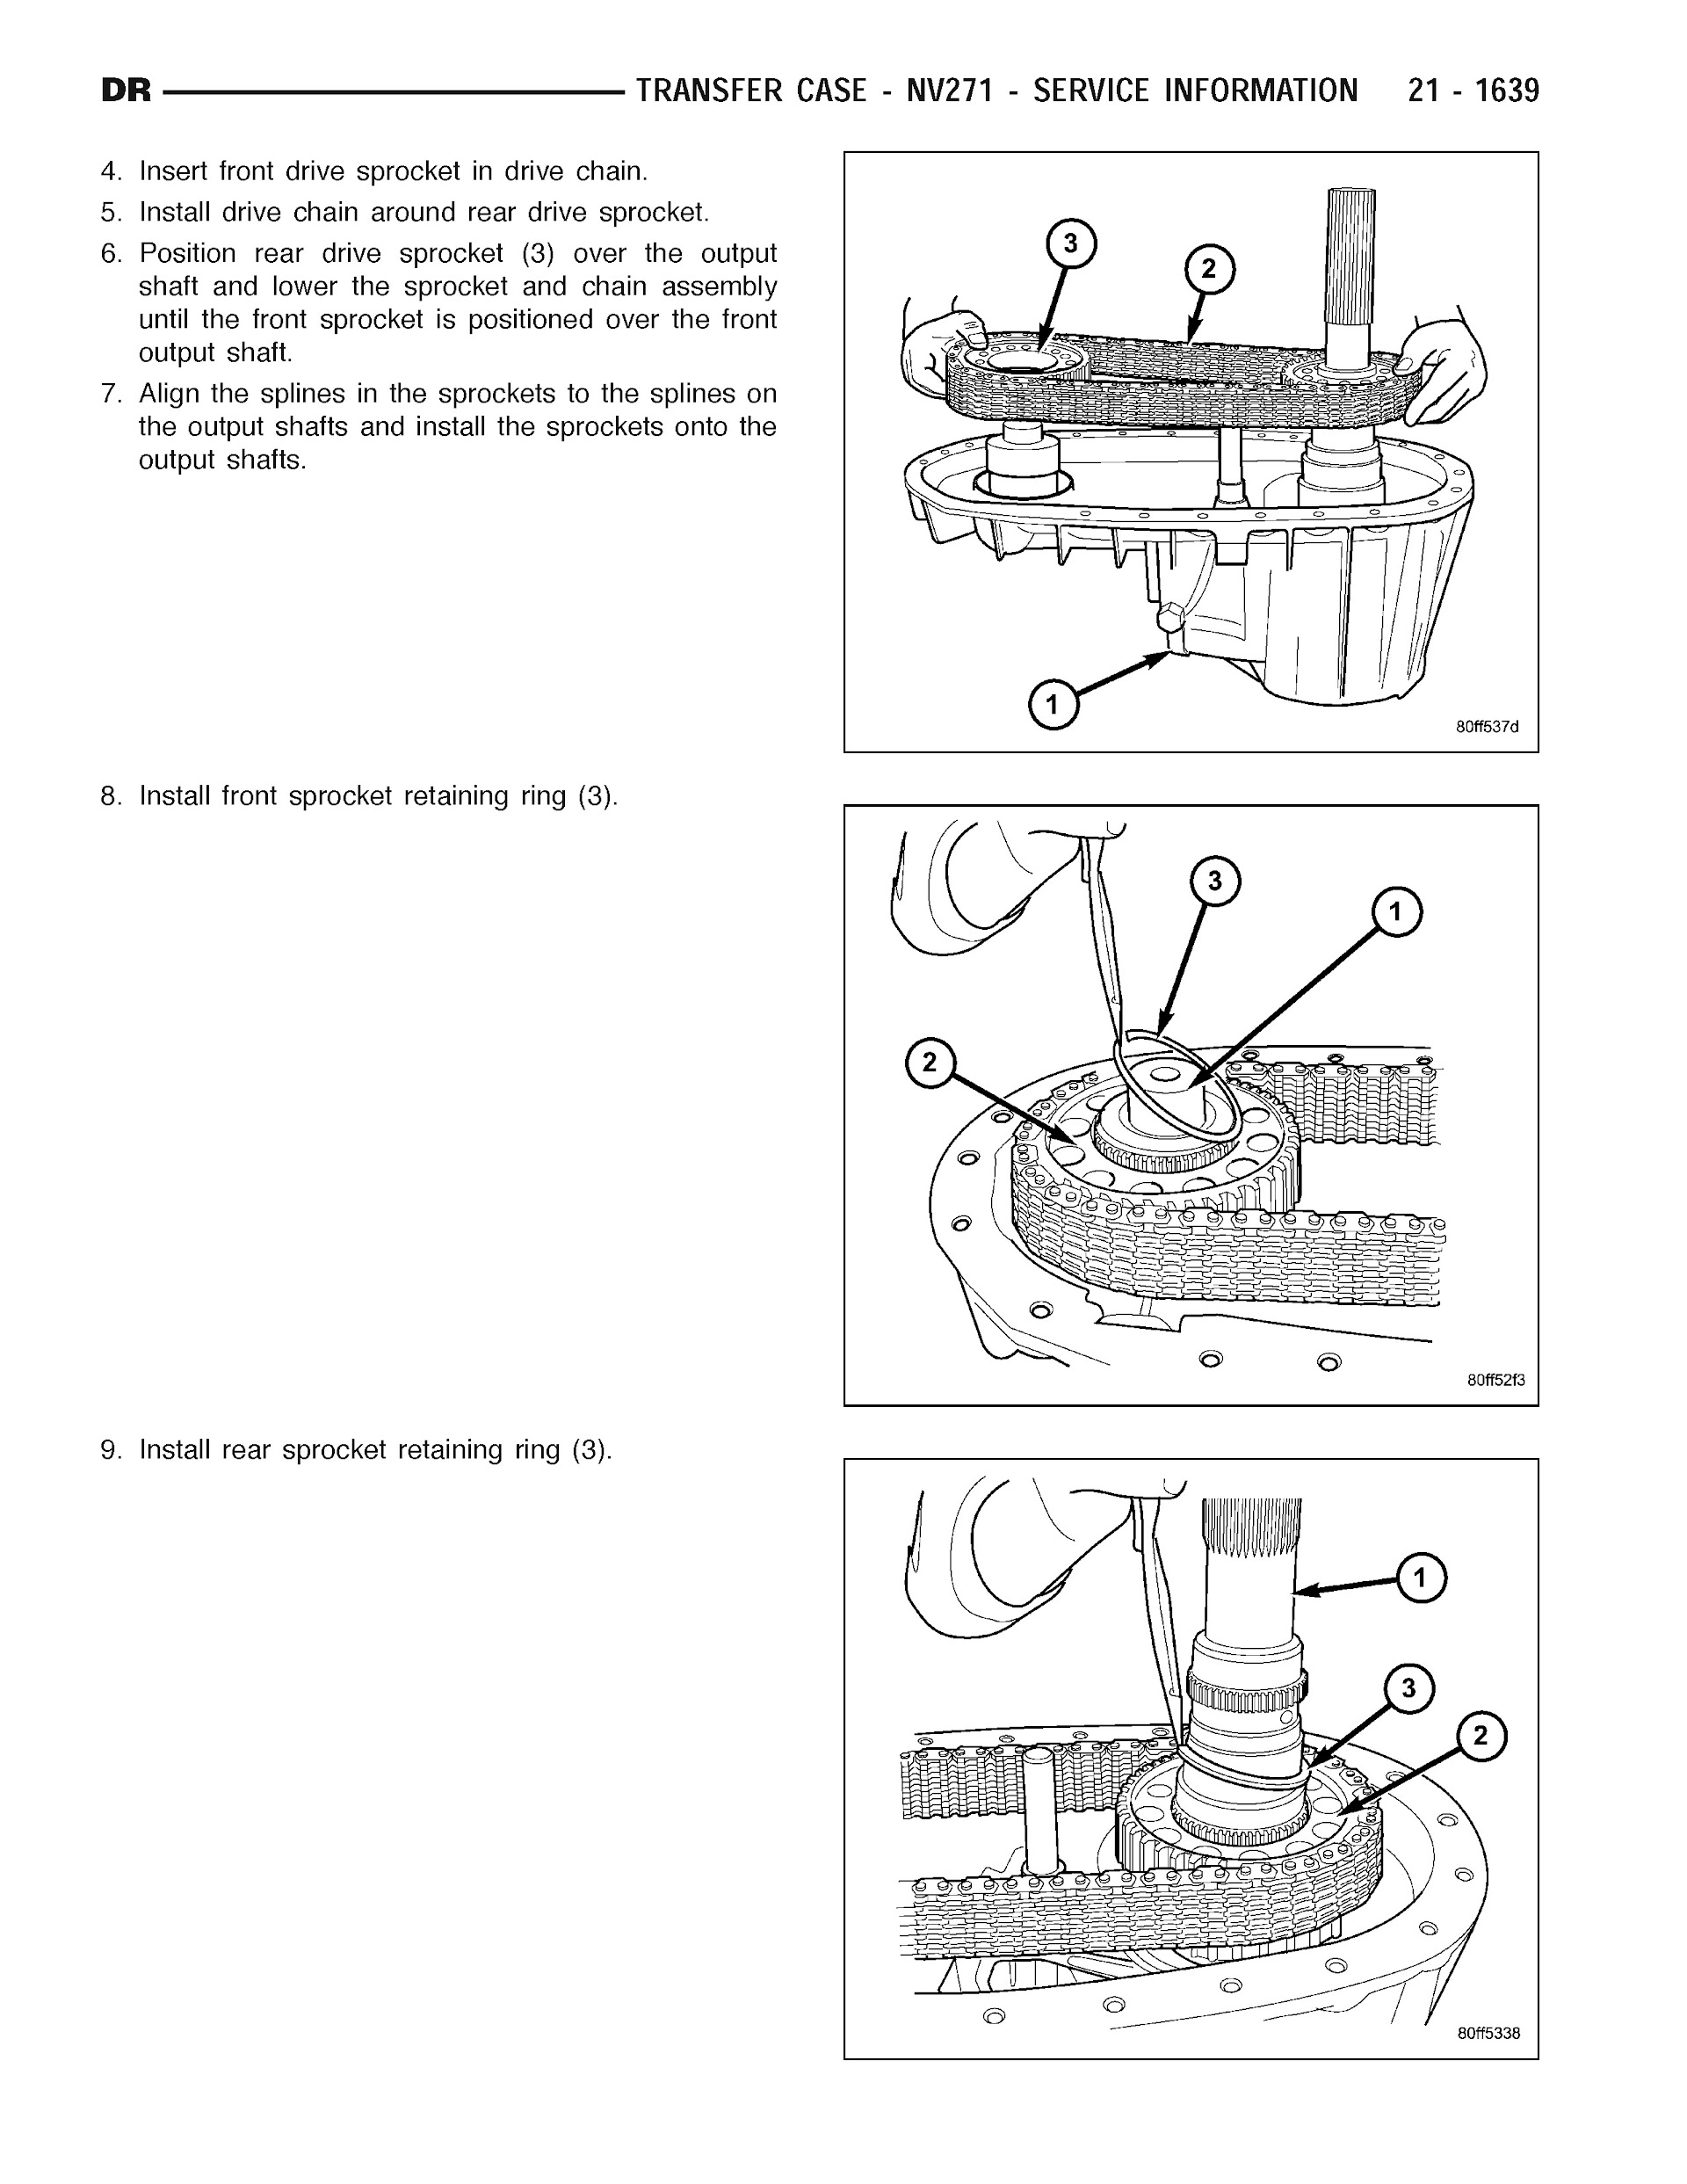 2007 Dodge RAM Repair Manual, Transfer Case